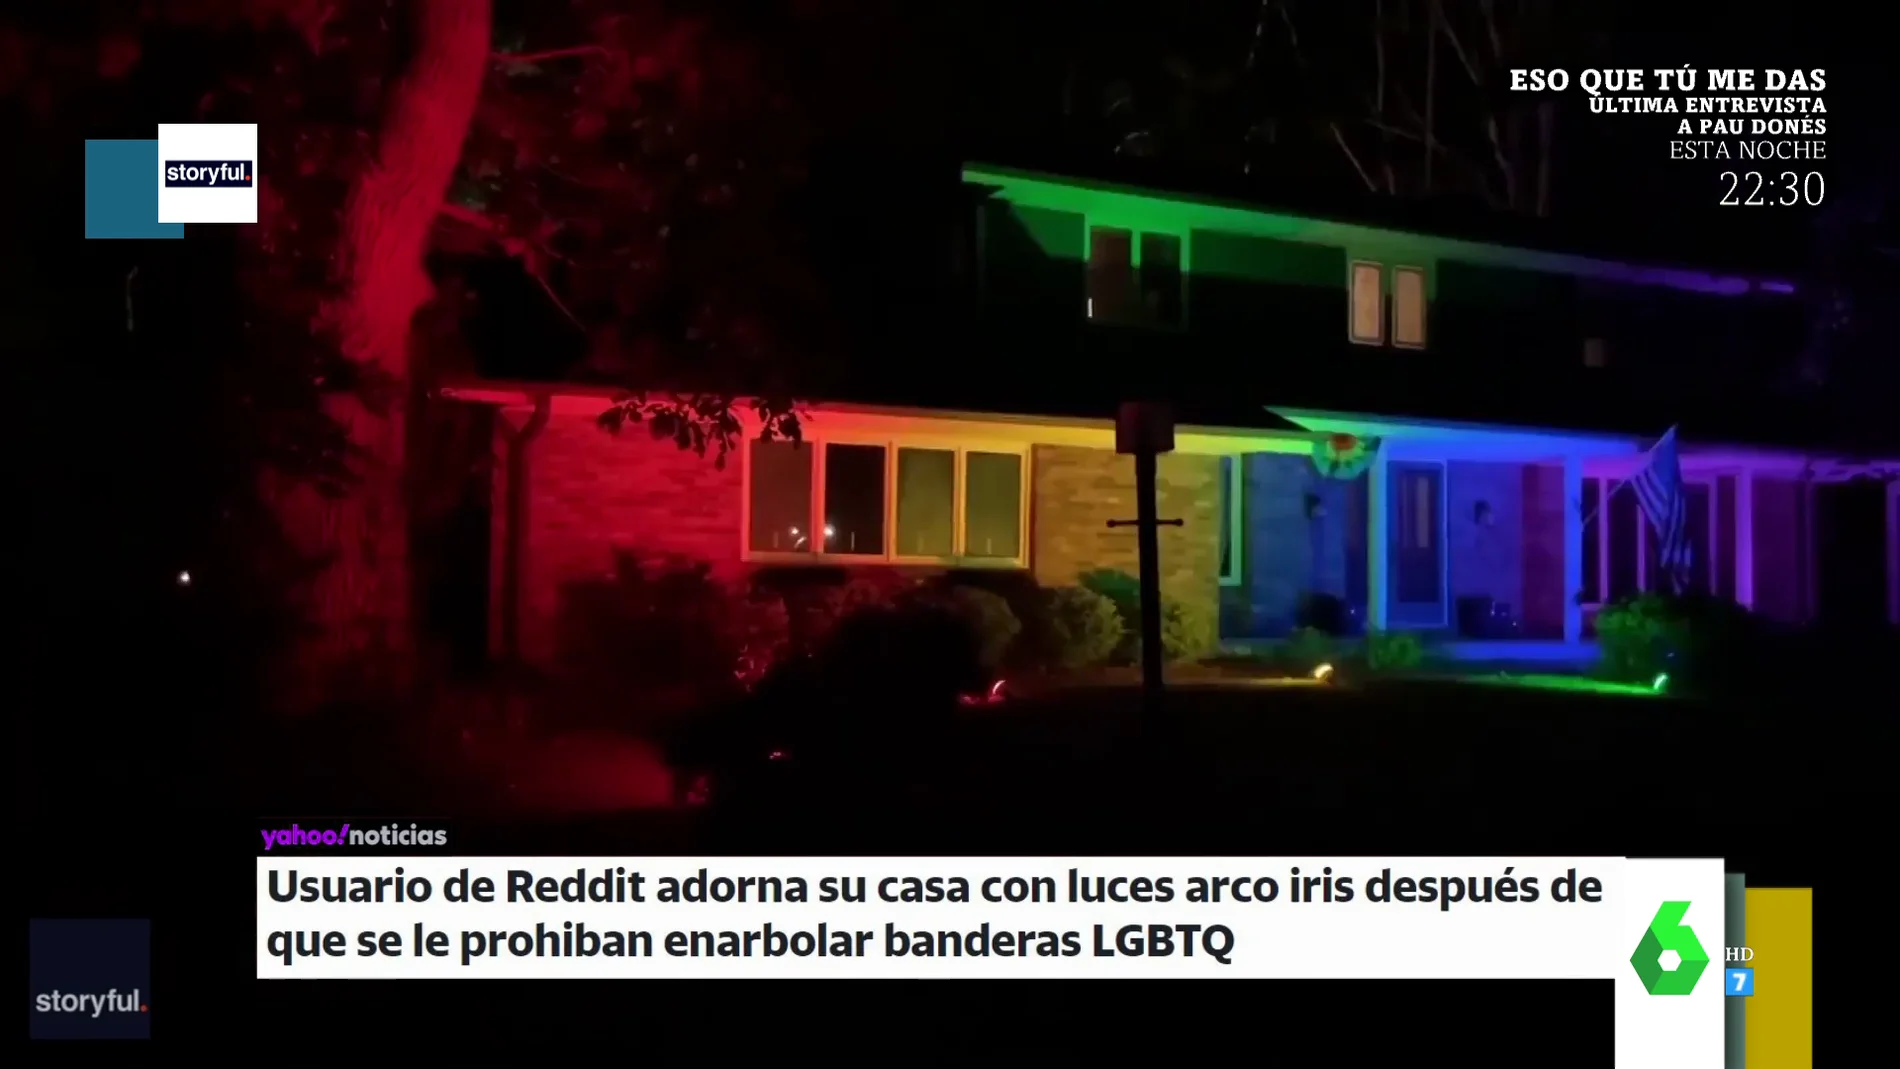 La ingeniosa solución de una persona cuyos homófobos vecinos le prohibieron poner la bandera LGTBI en su casa